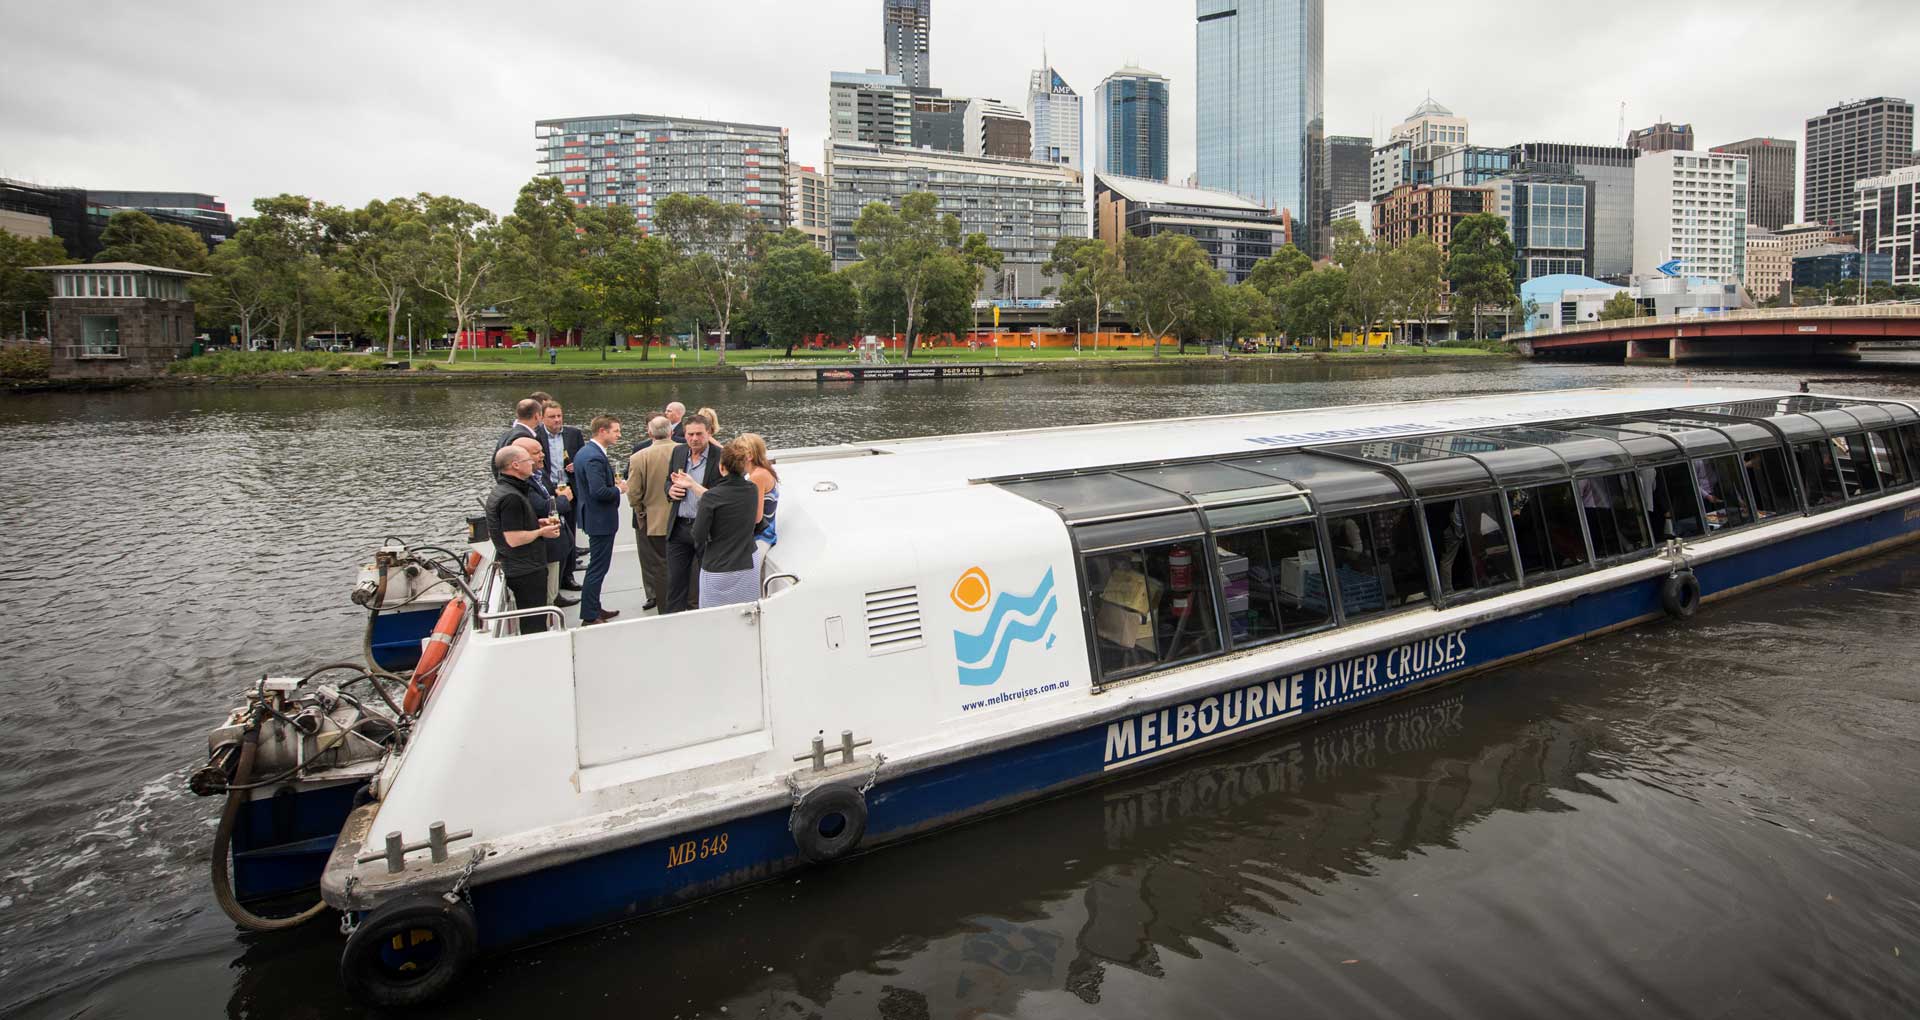 Melbourne Yarra River Restaurants | Melbourne River Cruises